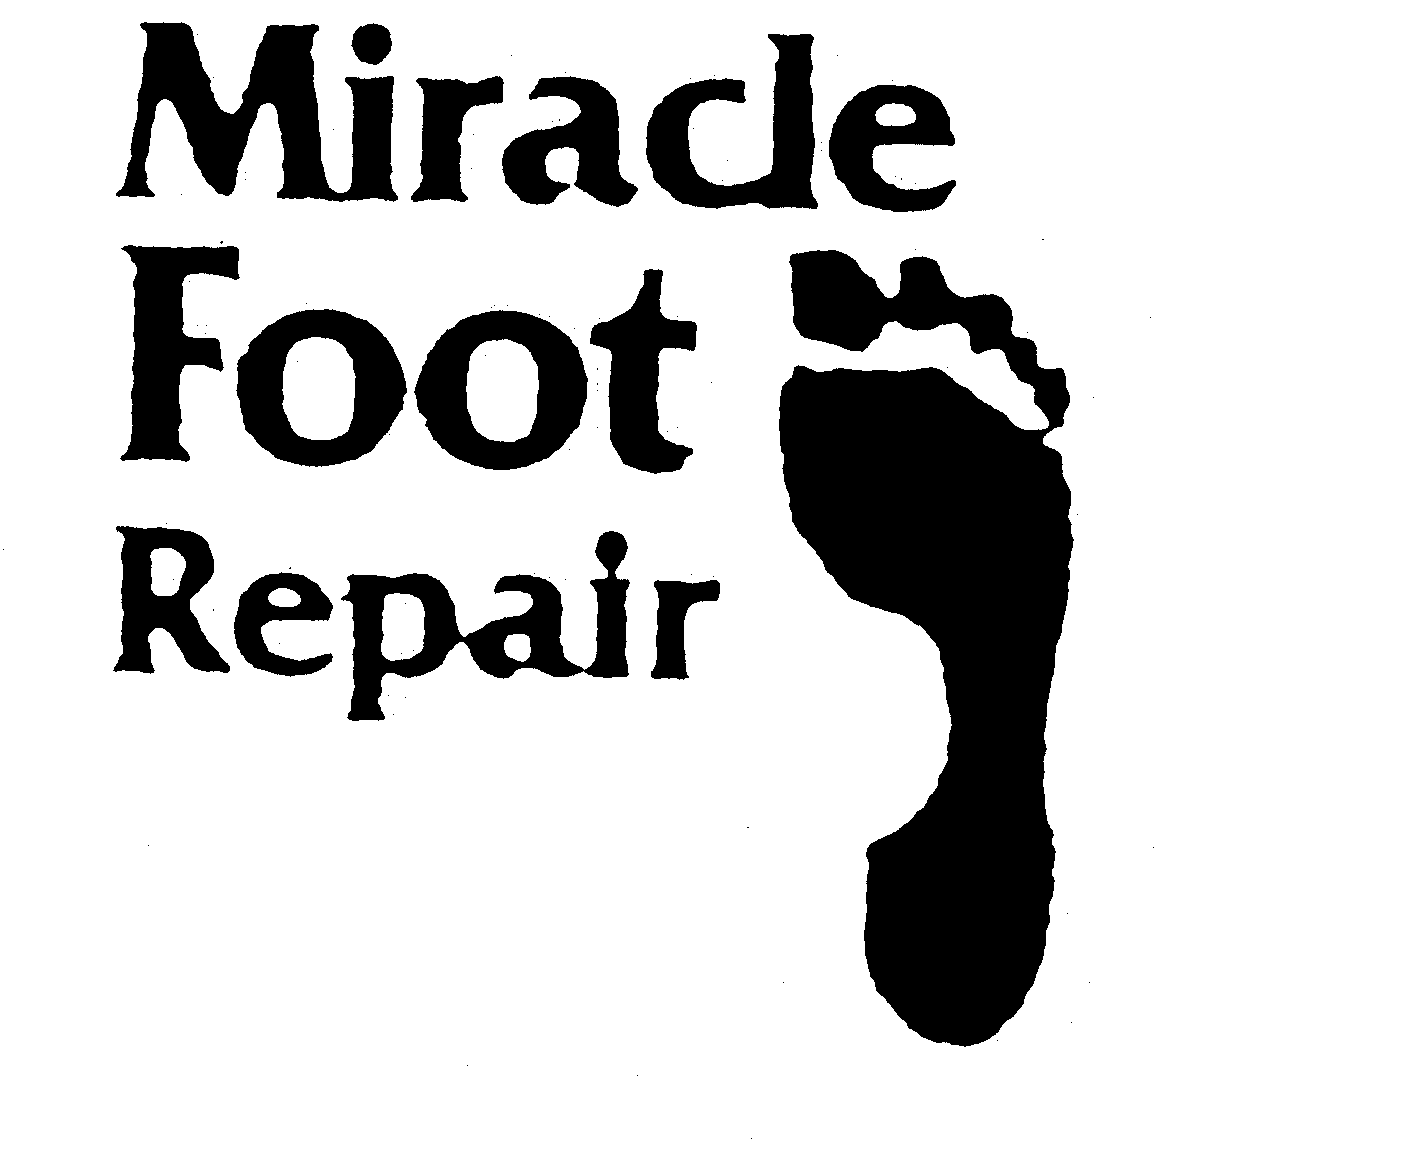 MIRACLE FOOT REPAIR